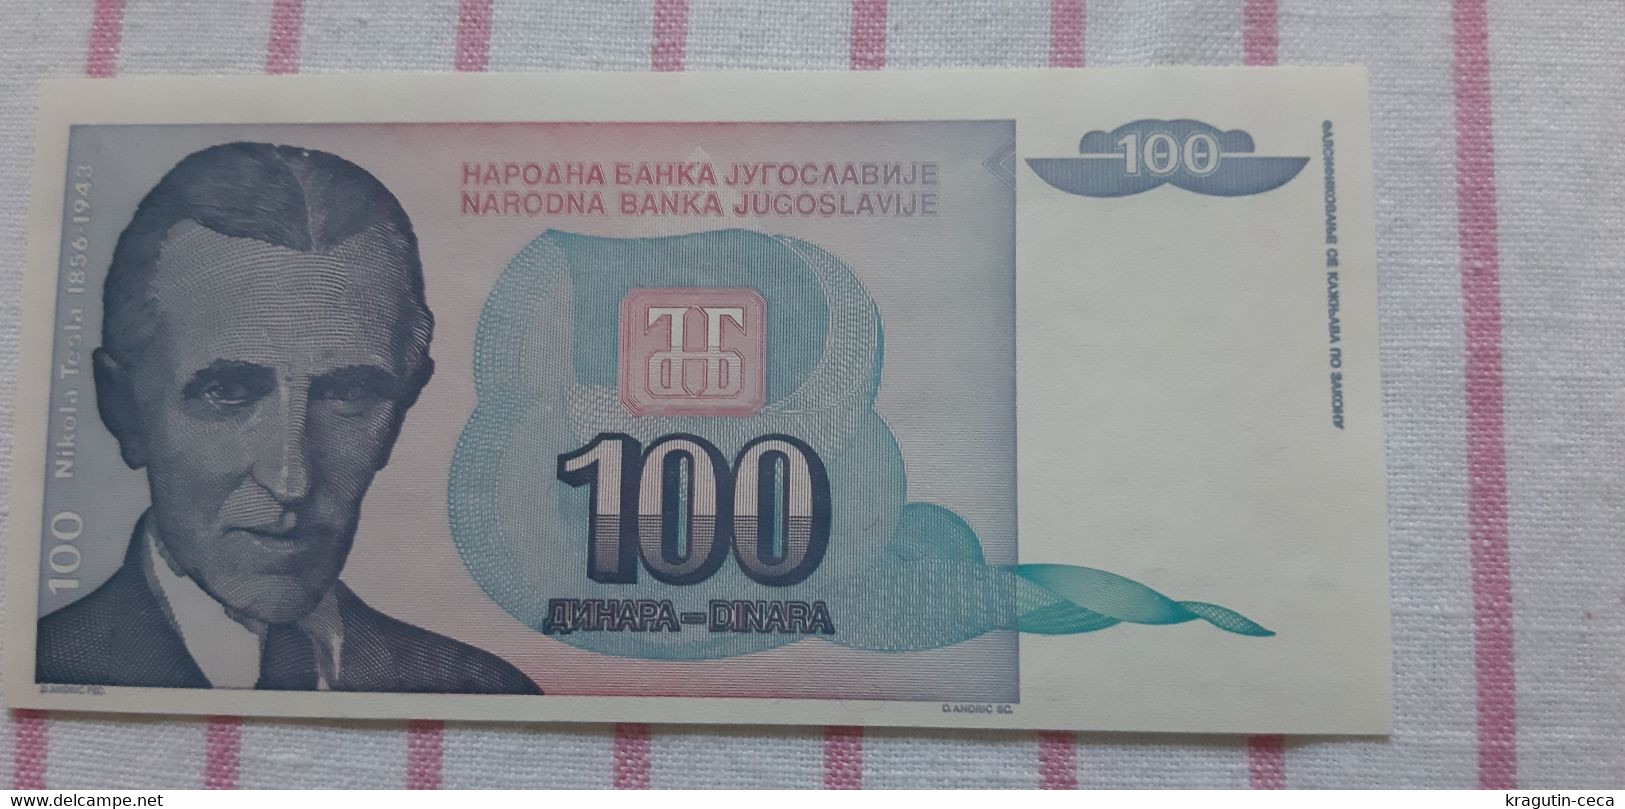 Nikola Tesla 1994 Yugoslavia SERBIA 100 Dinar Banknote BILL